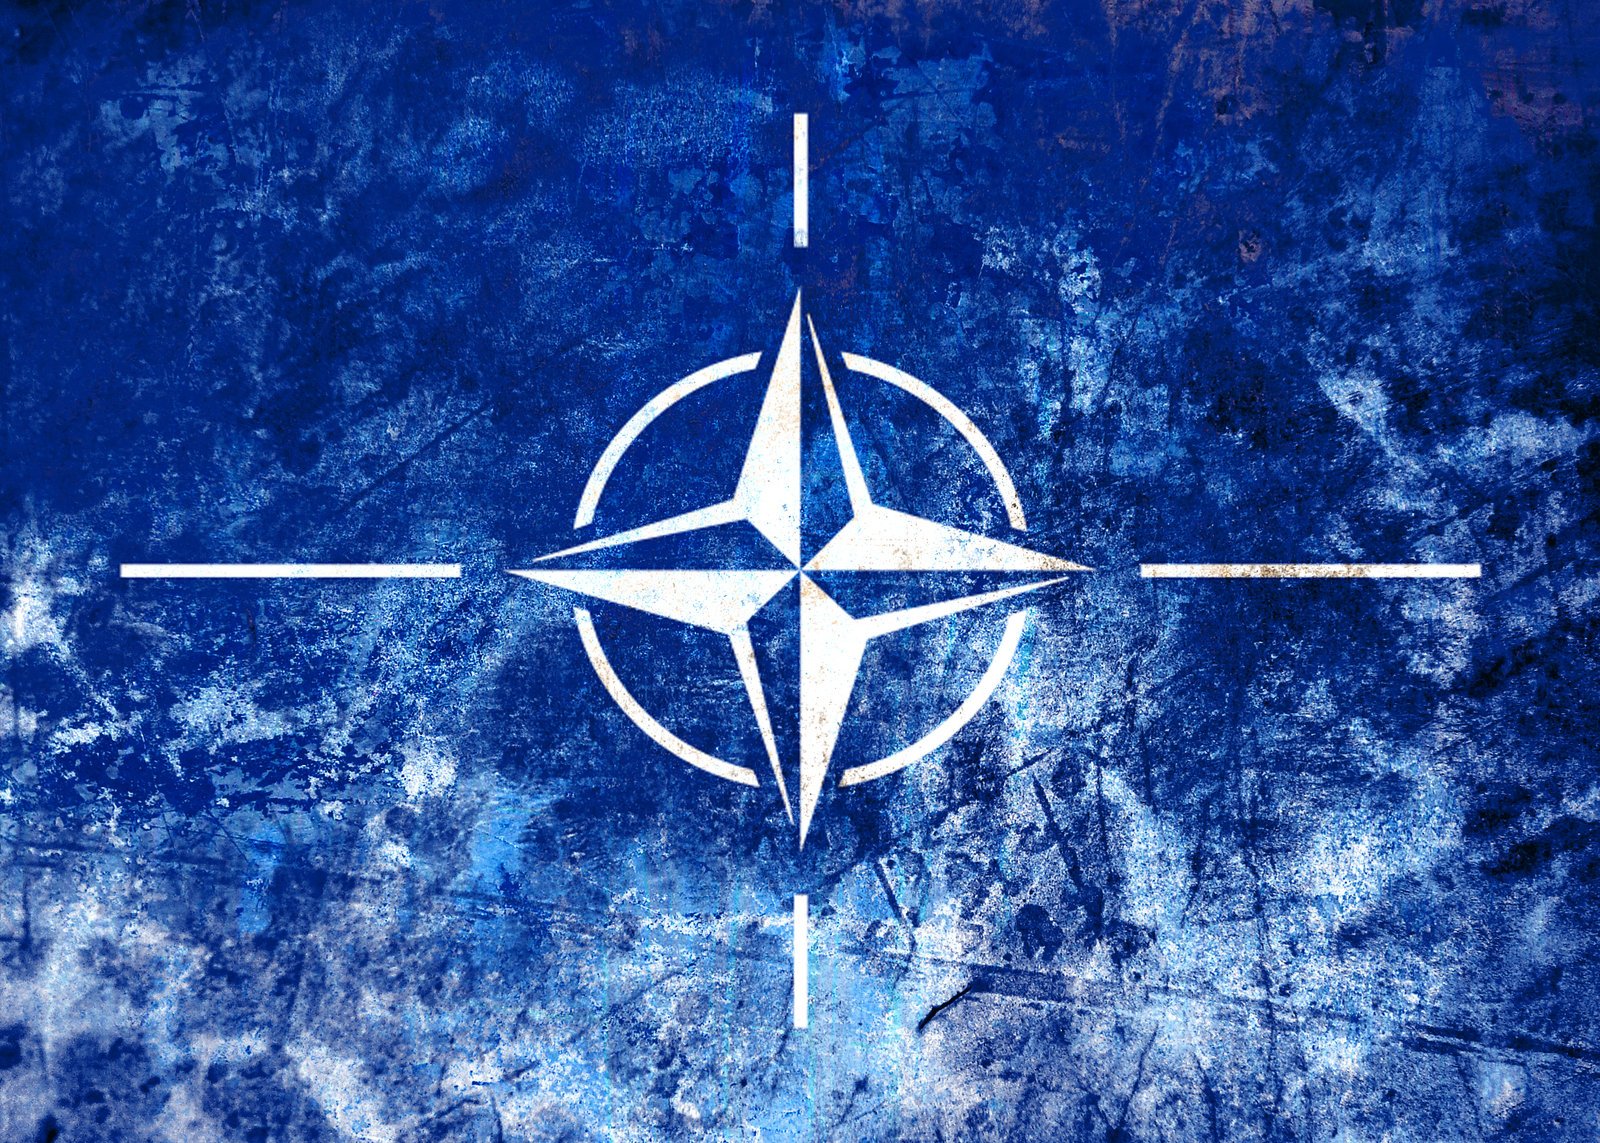 Вызов нато. Флаг НАТО 1949. Североатлантический Альянс НАТО. Флаг Североатлантического Альянса. NATO (North Atlantic Treaty Organization) - Североатлантический военный Альянс (НАТО)..